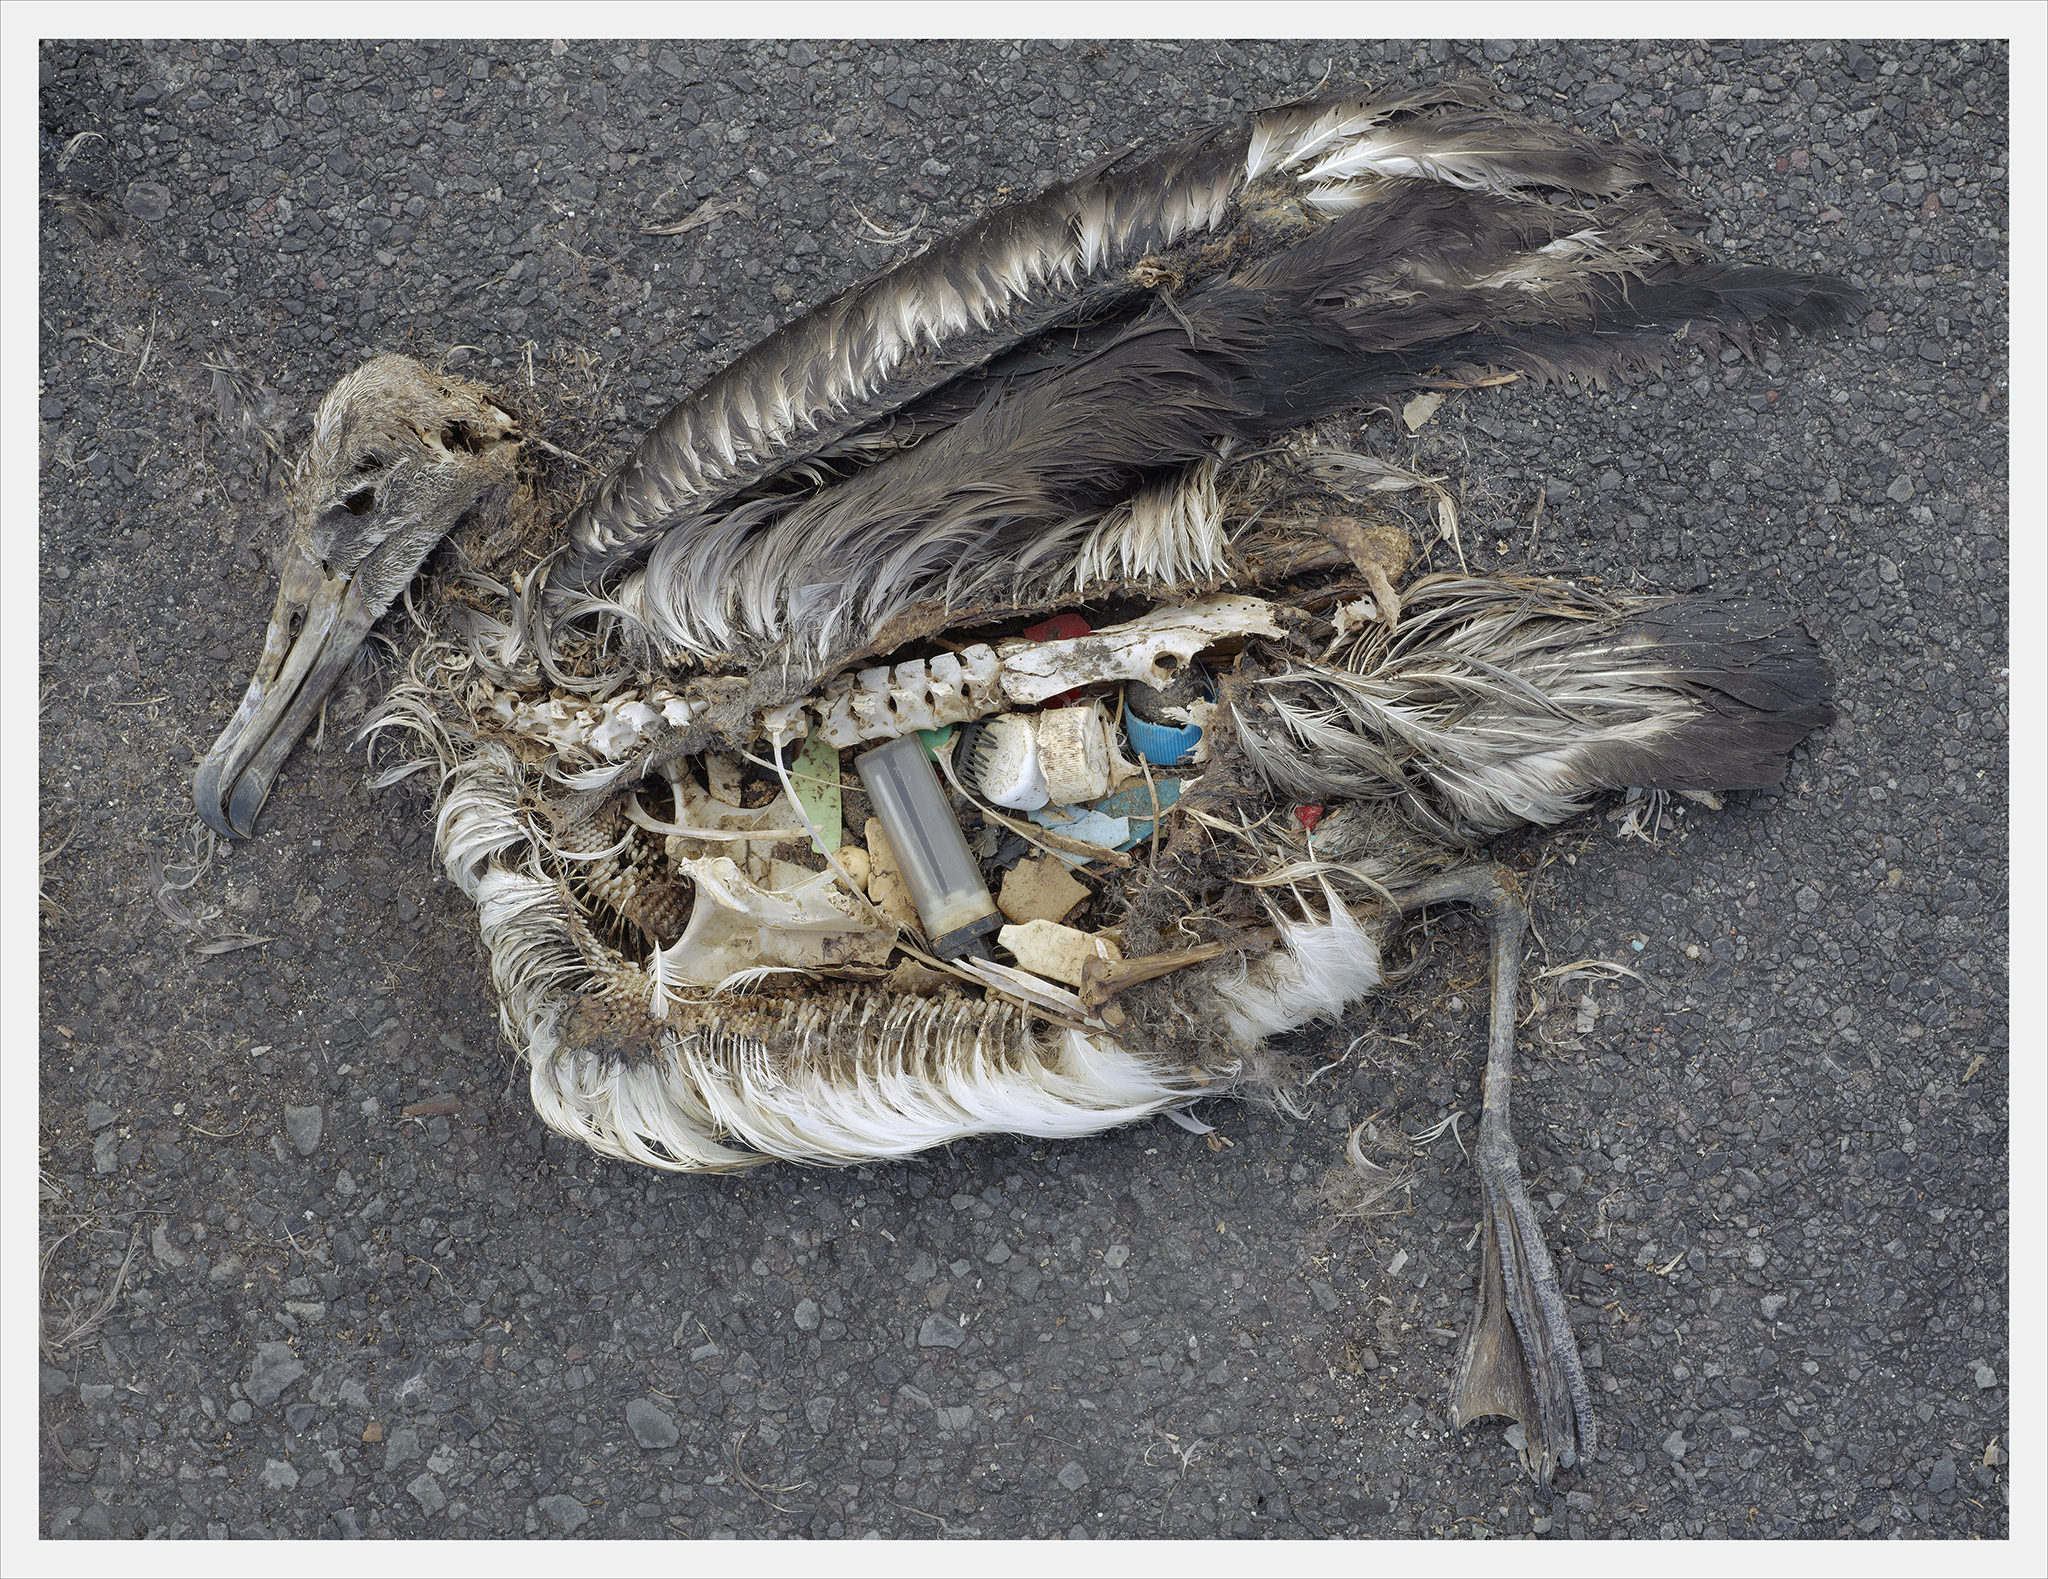 Fotografía de Chris Jordan del cadáver de un pájaro con plásticos en el estómago